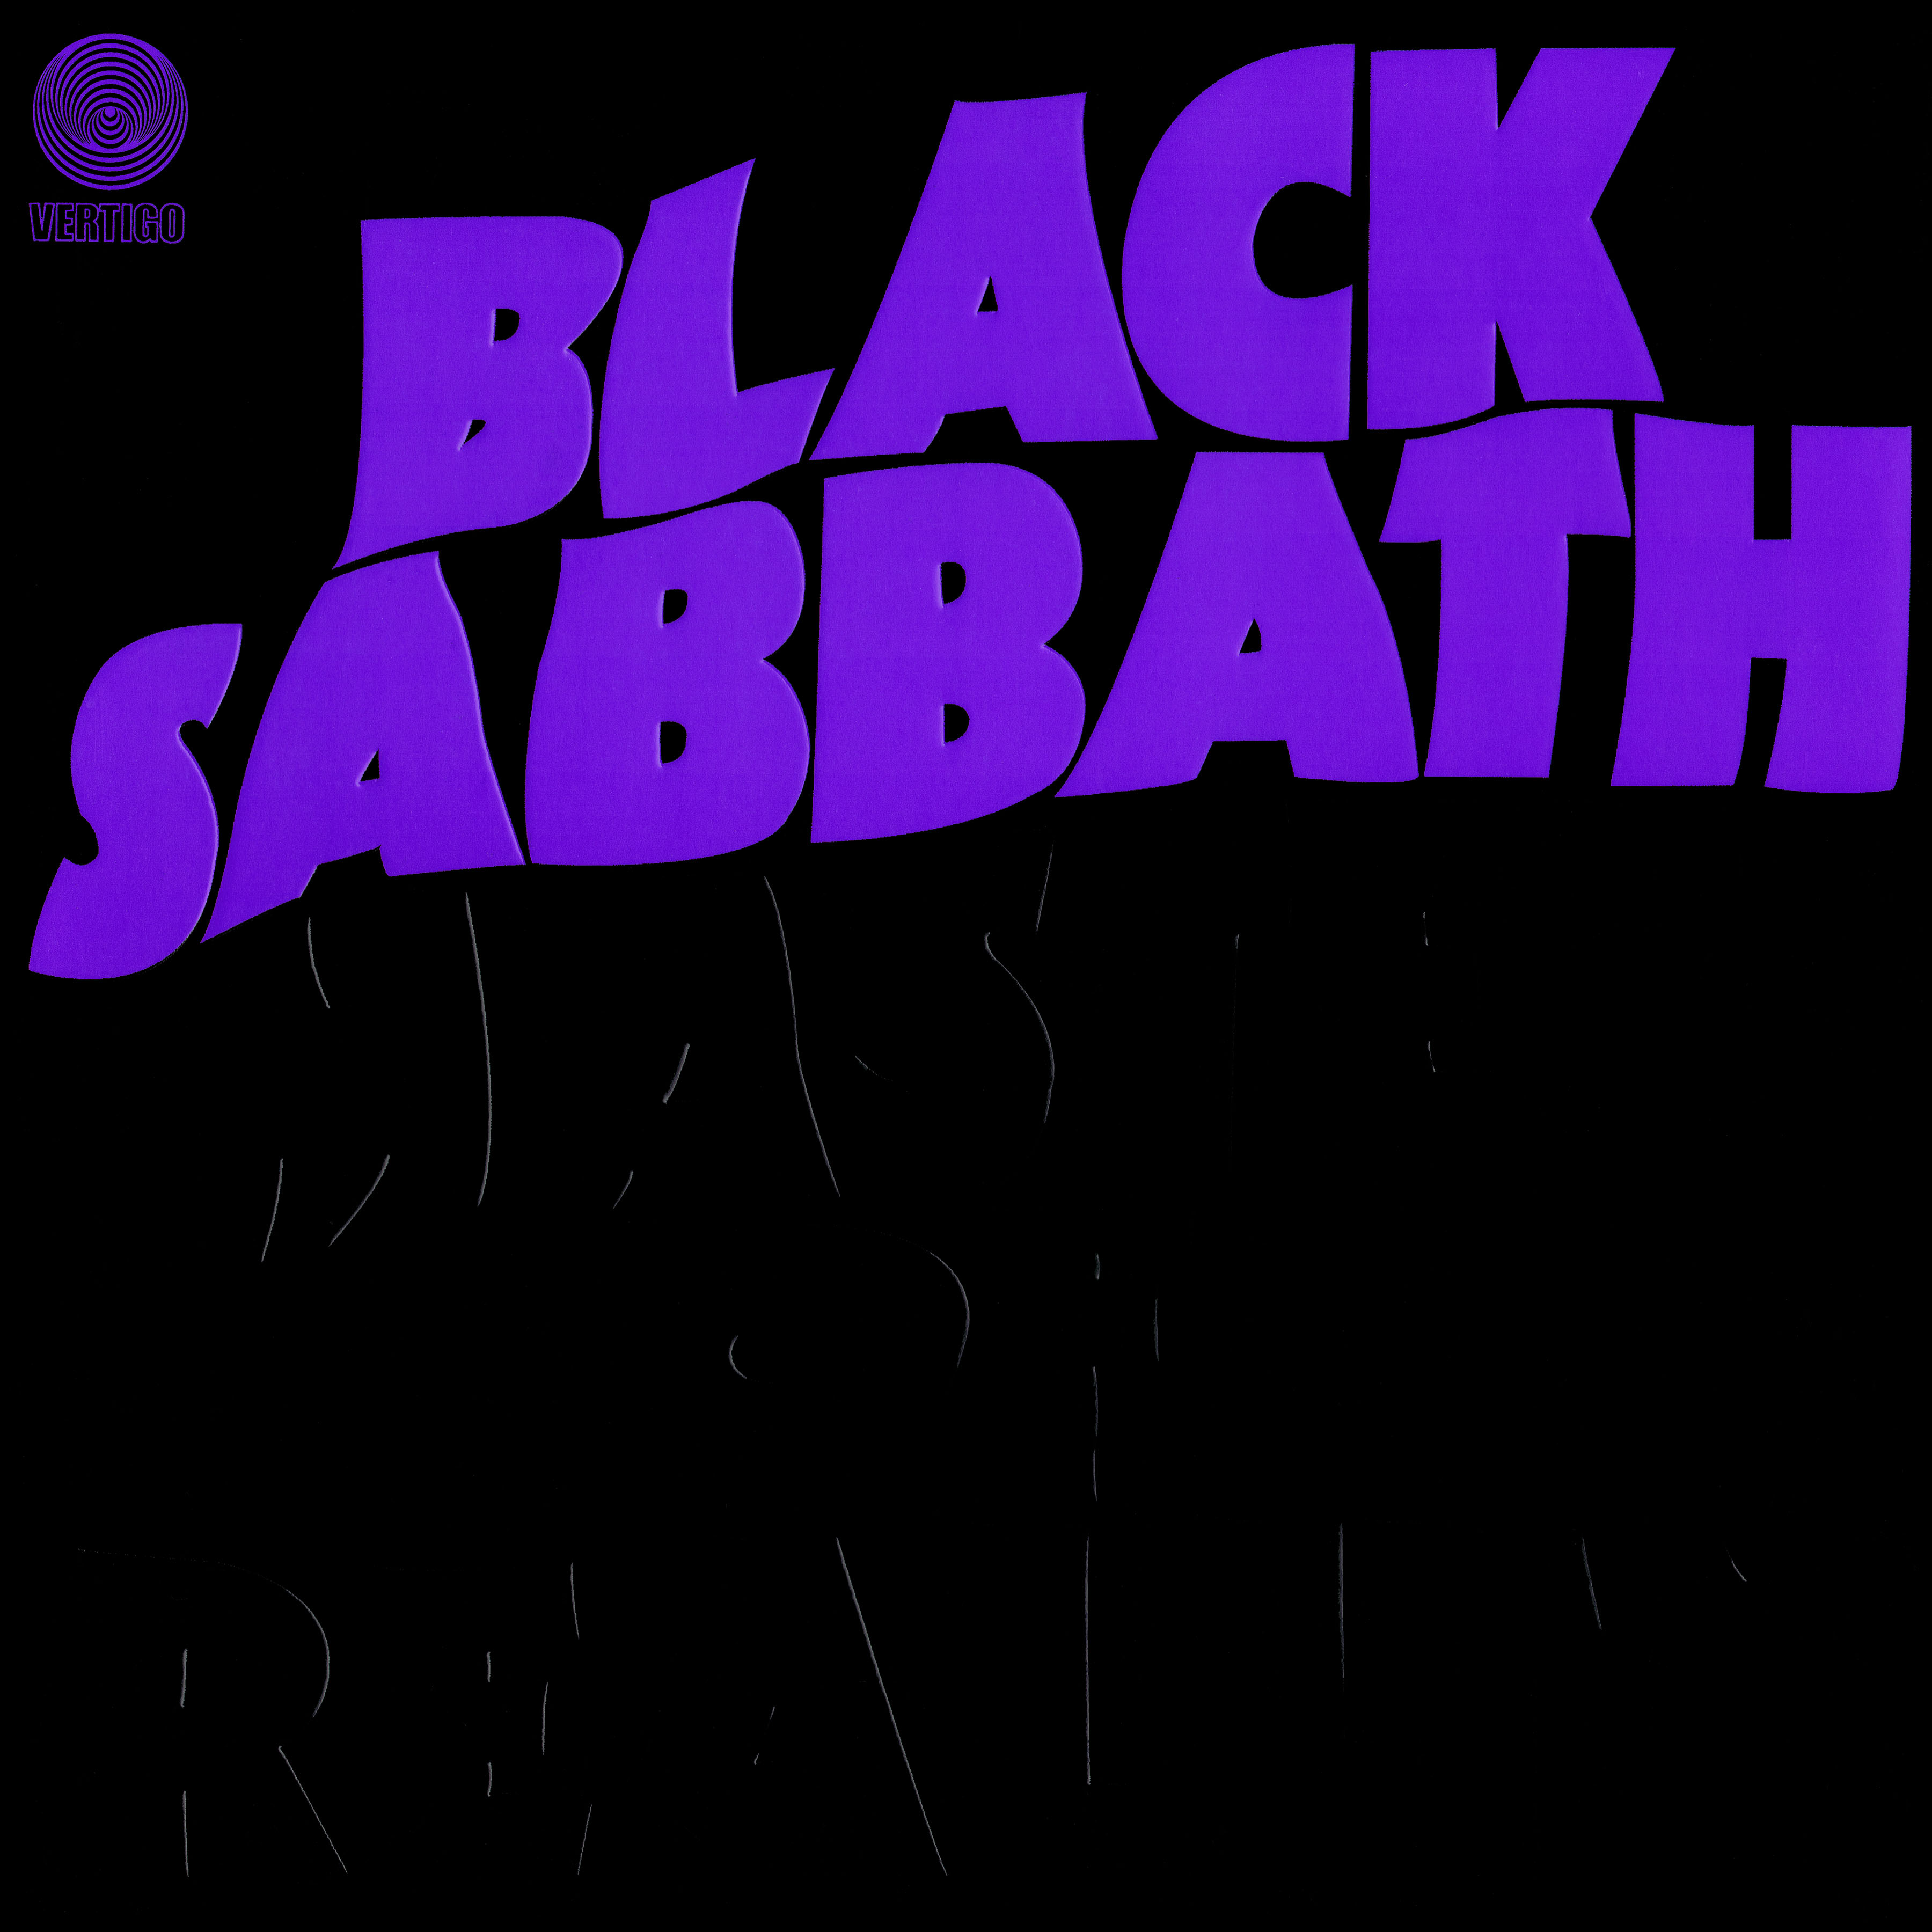 Born Again (Black Sabbath album) - Wikipedia